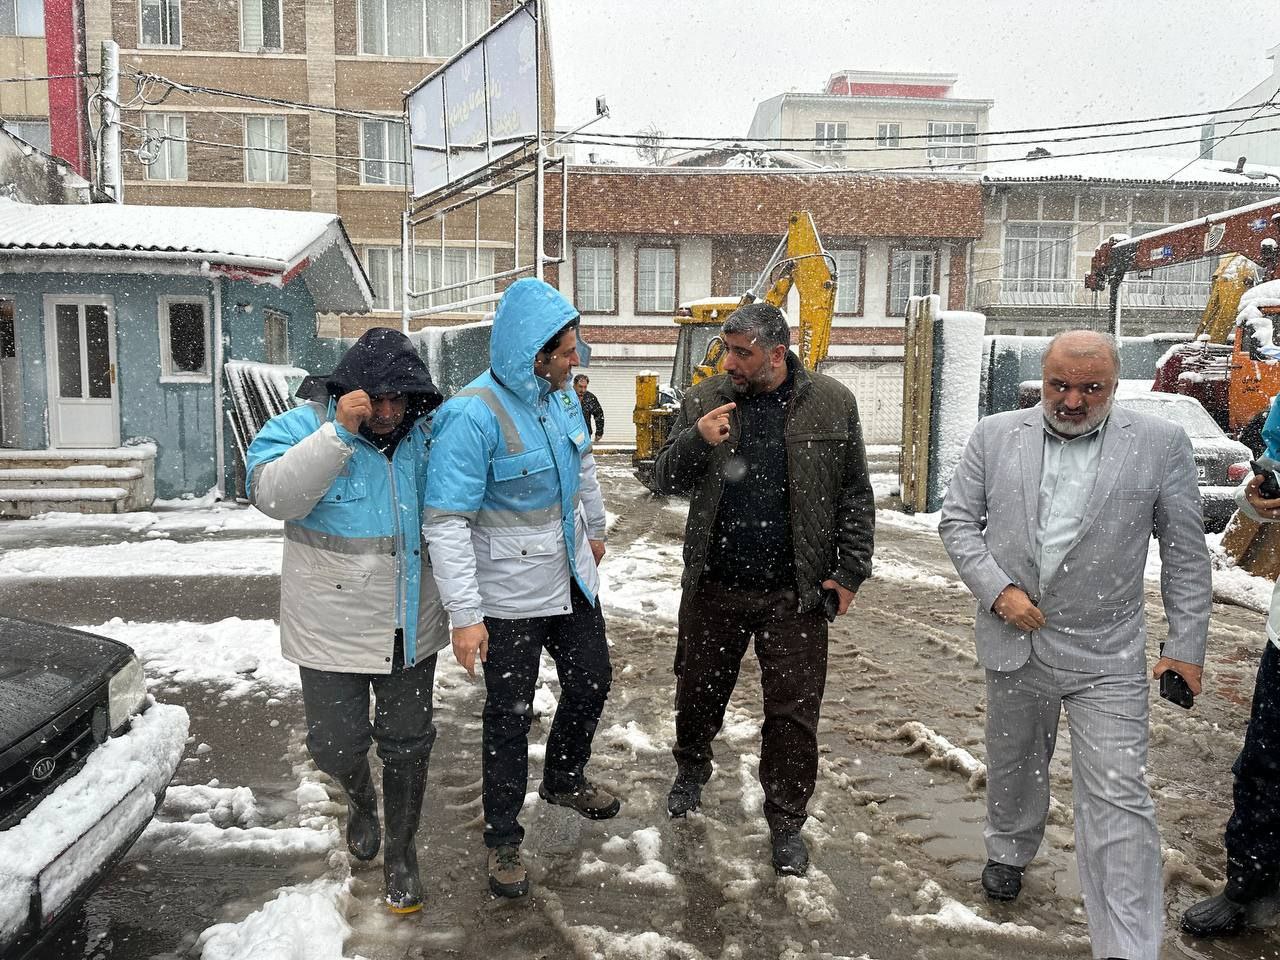 بازدید روح الله بخشی نژاد ، سرپرست فرمانداری لاهیجان از ستاد عملیات زمستانی شهرداری لاهیجان